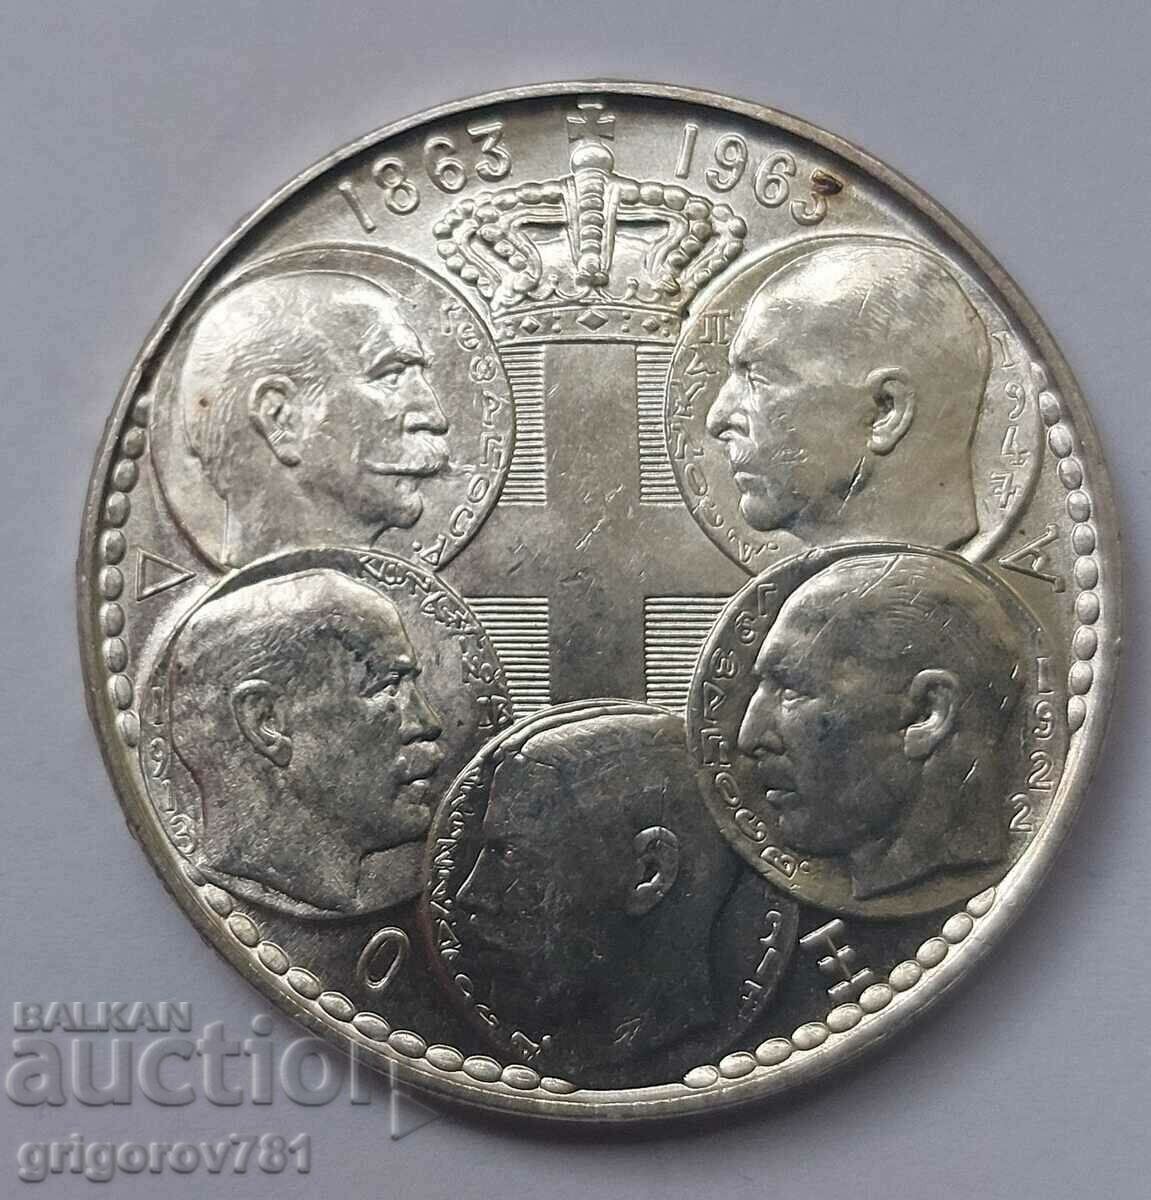 30 drachma silver 1963 - silver coin #11